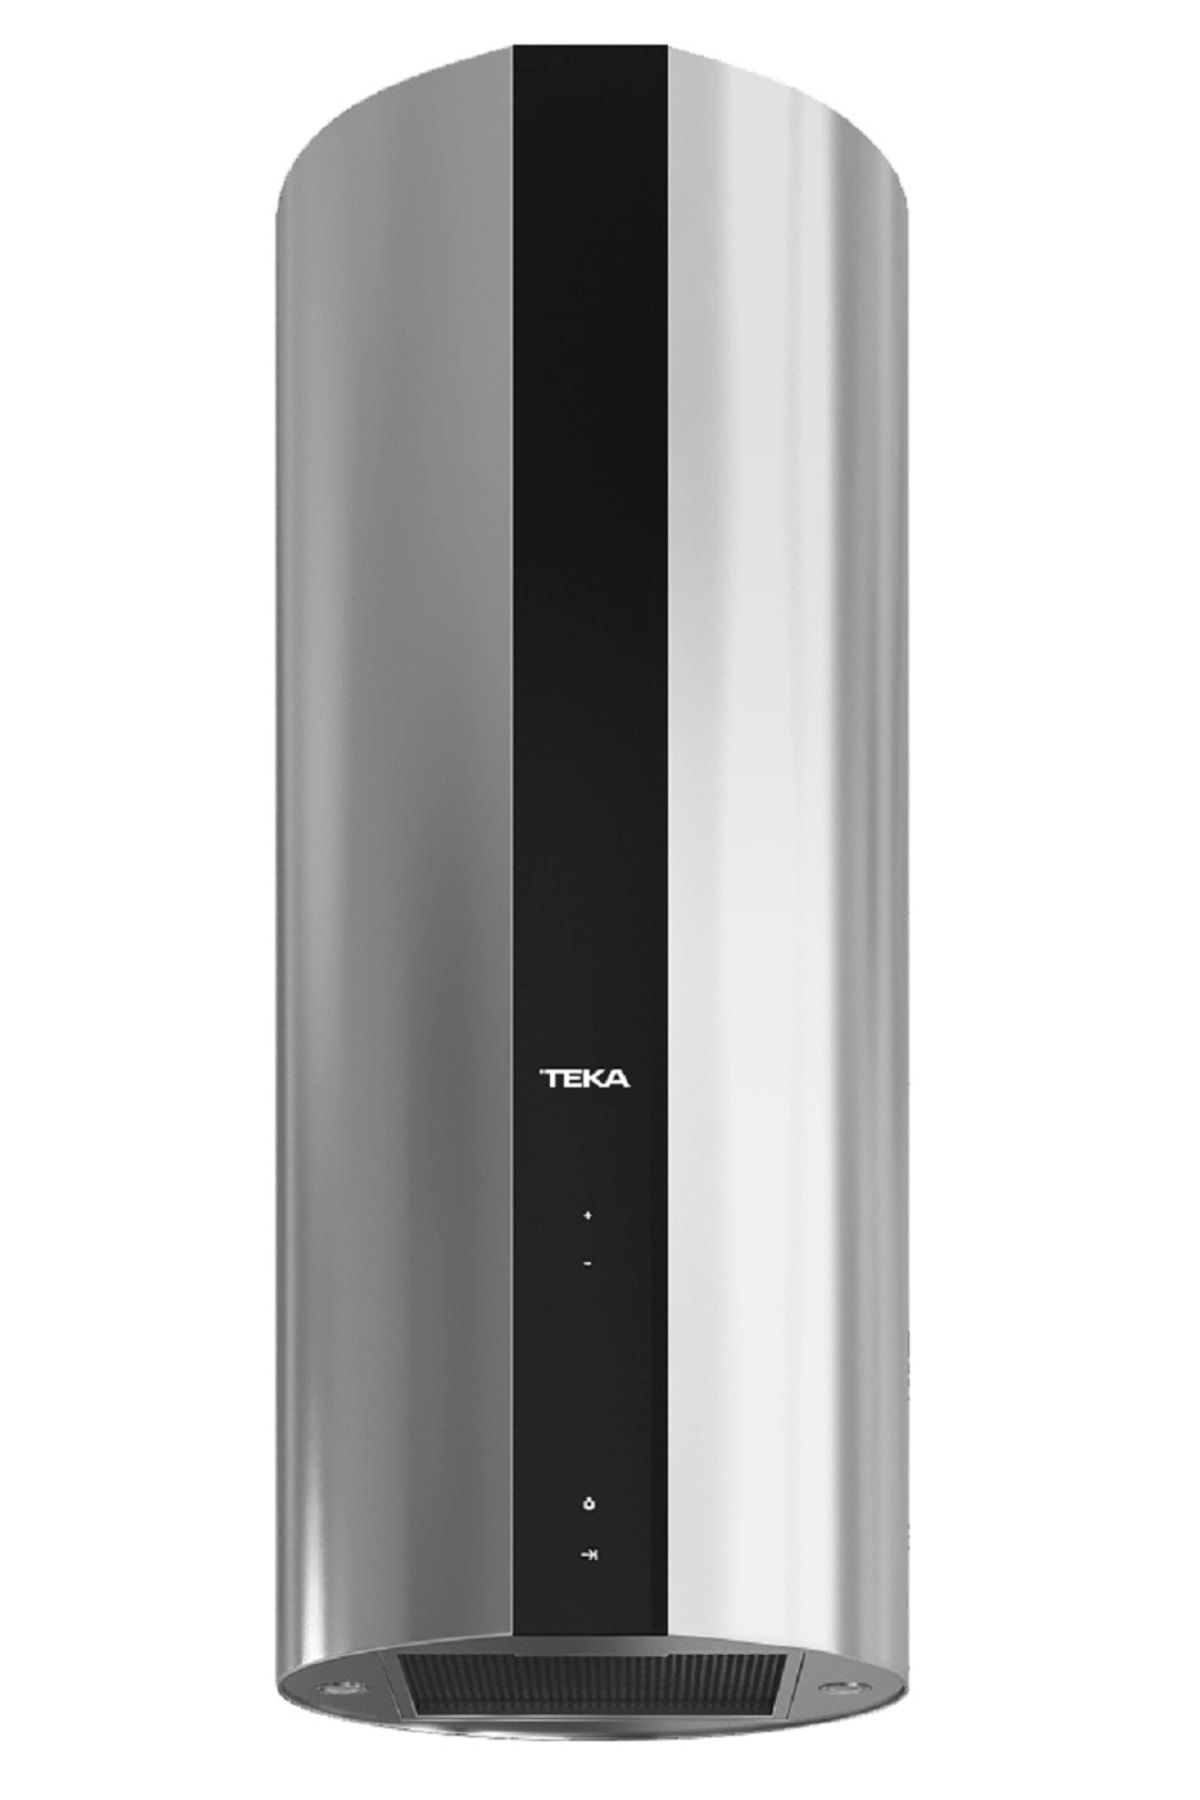 Teka - CC 485 - Ada Tipi Davlumbaz - 771 m³/h - Inox - 40 cm - 40480330